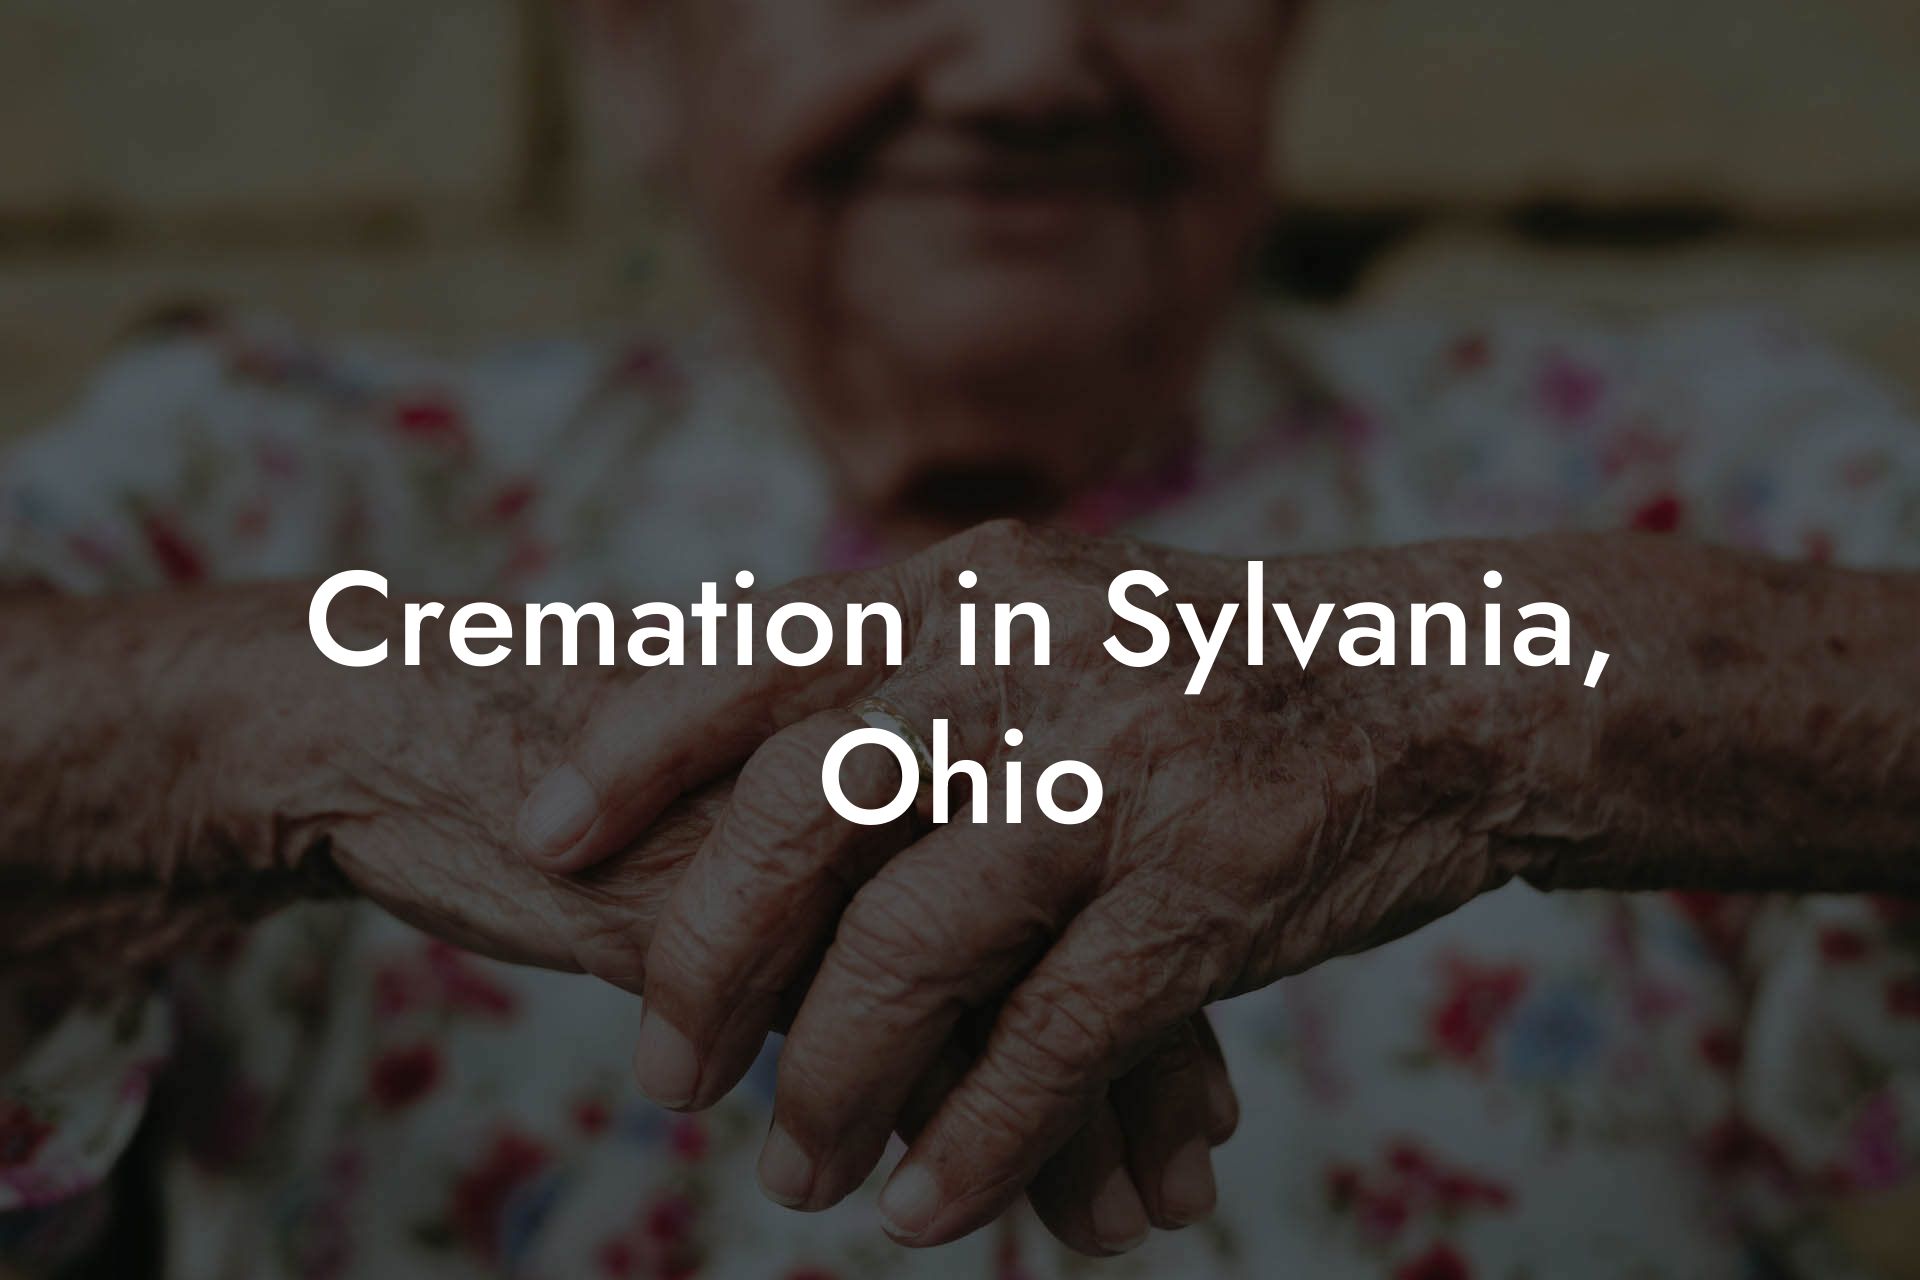 Cremation in Sylvania, Ohio